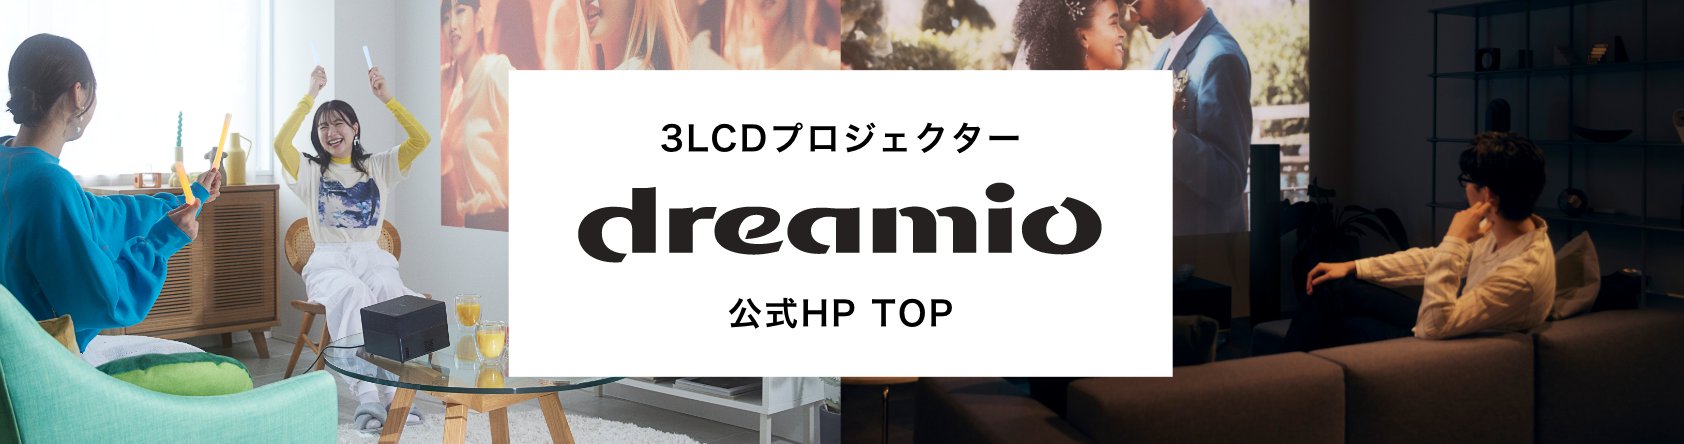 3LCDプロジェクター dreamio 公式ホームページトップ